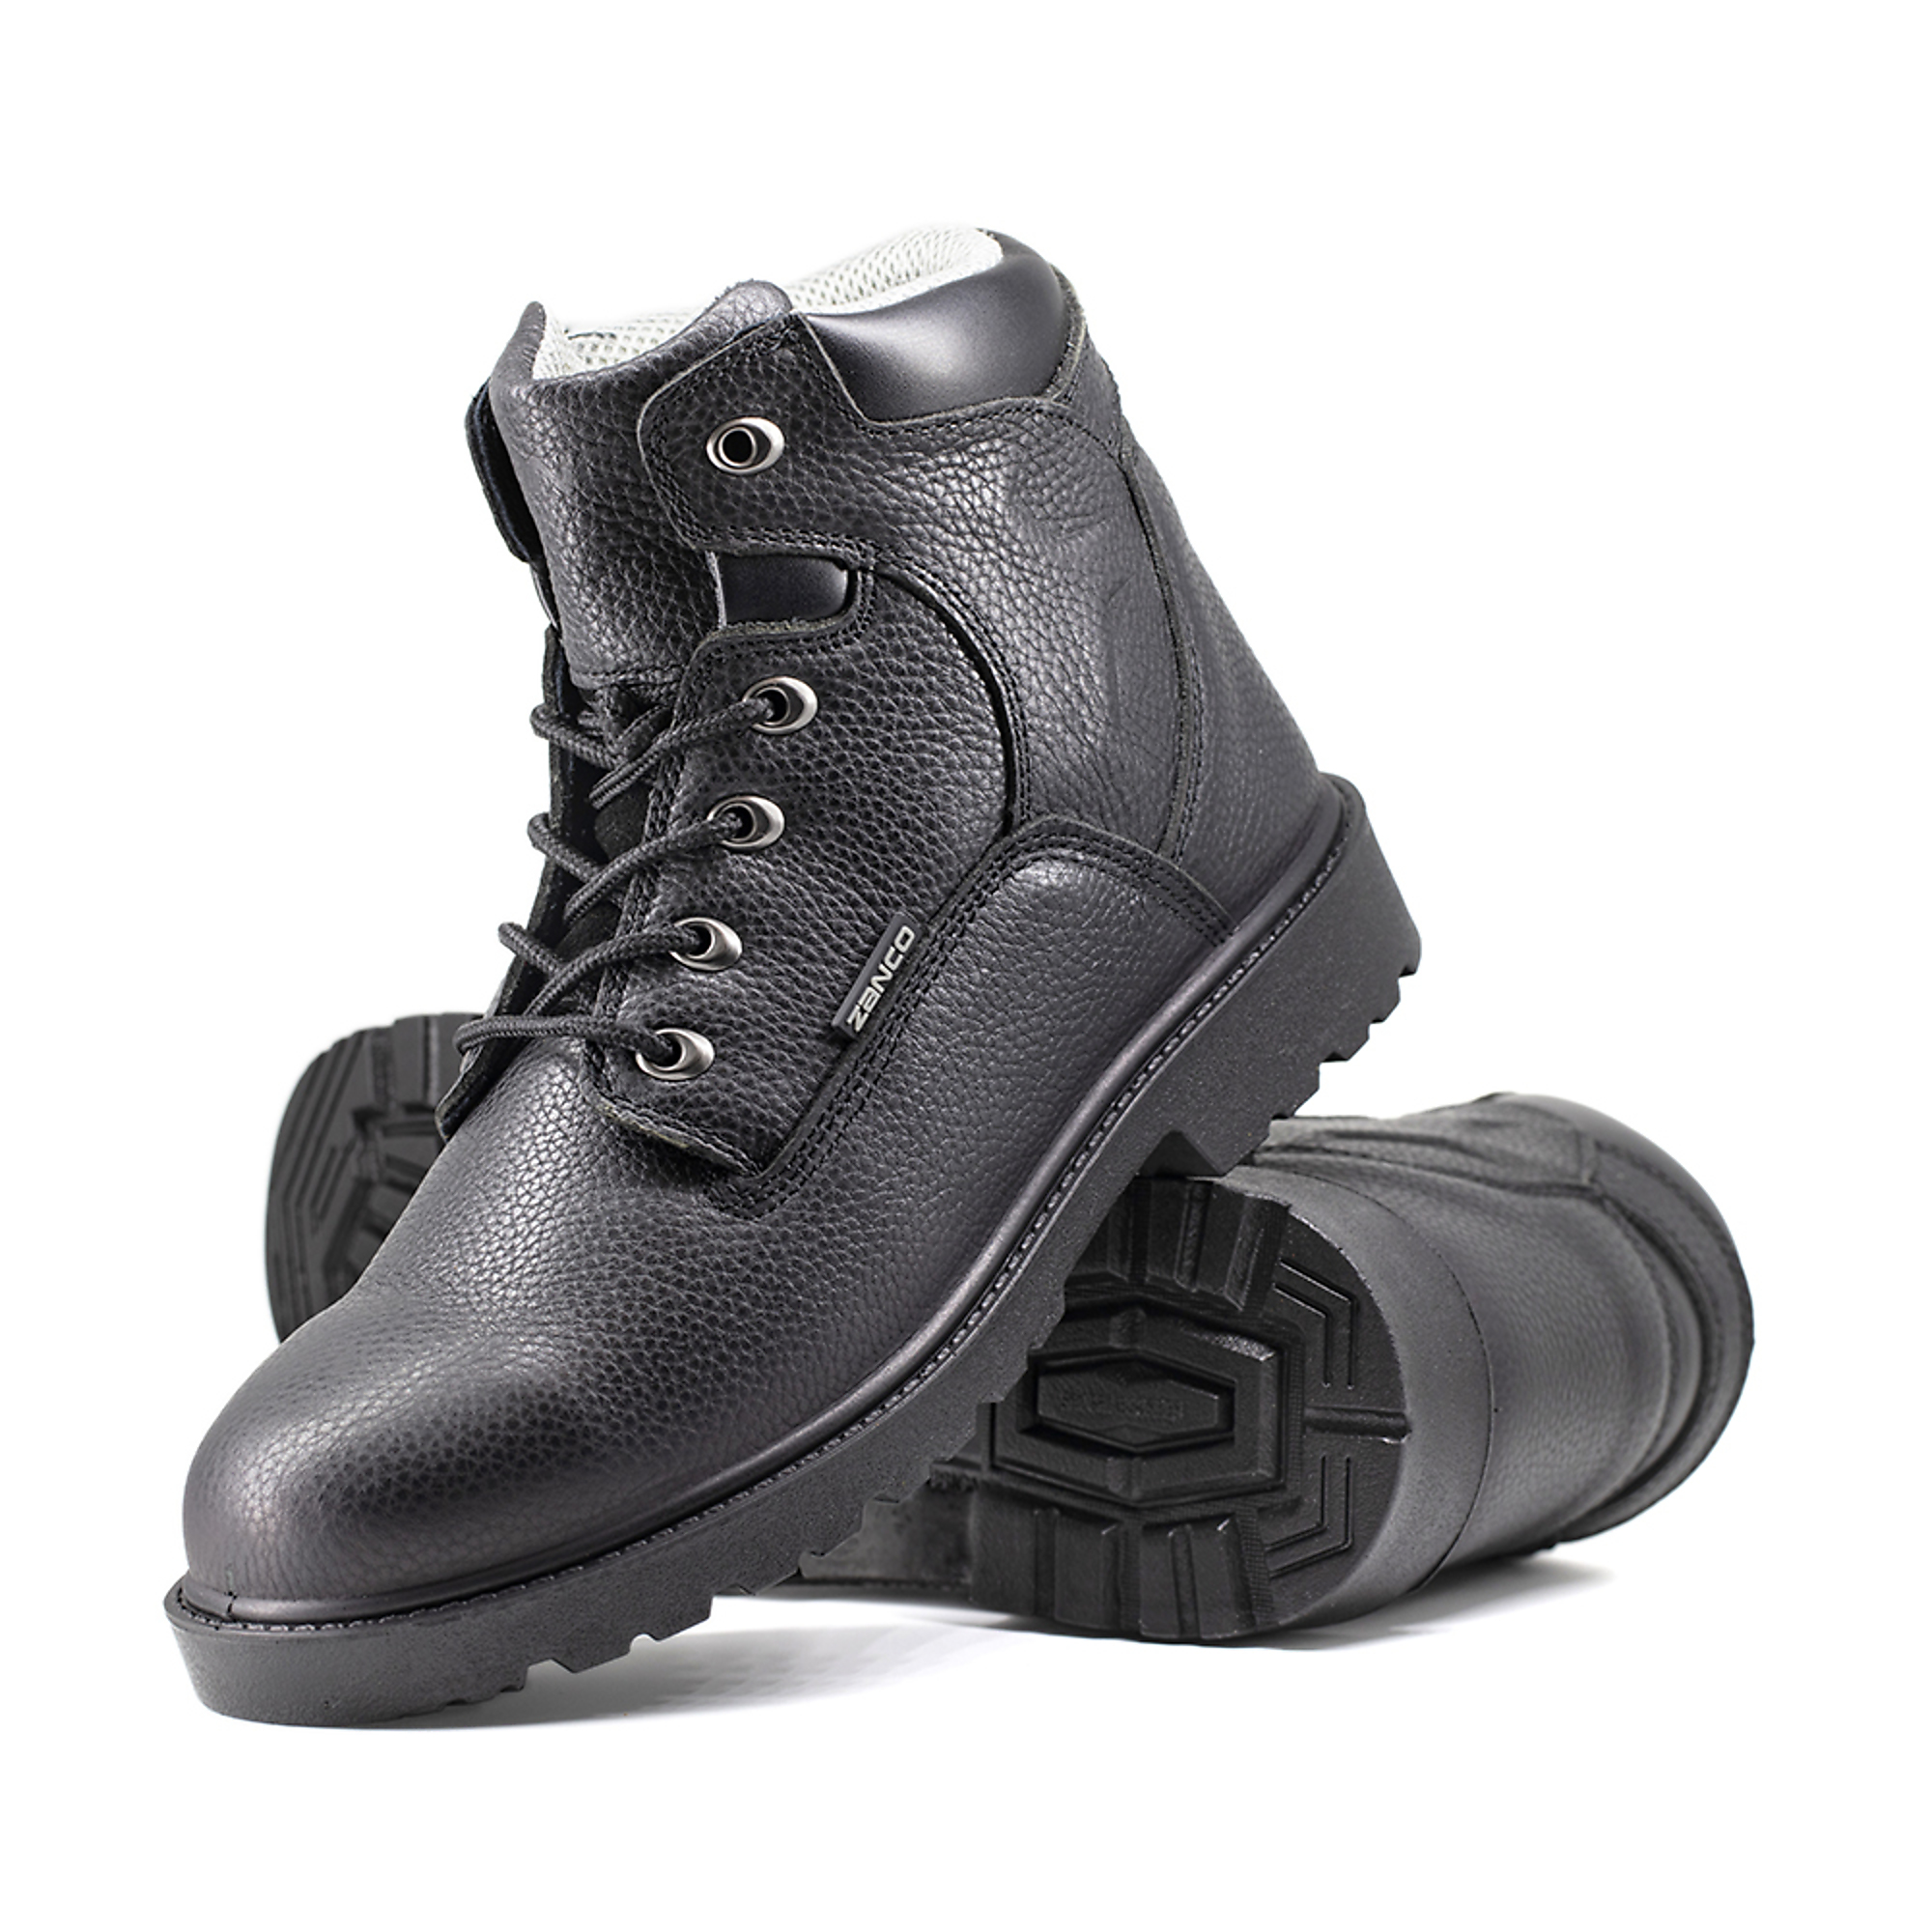 Zanco, Men's Waterproof,Steel toe,EH,Safety boots, Size 8 1/2, Width Medium, Color BLACK, Model 7682-SE-8.5